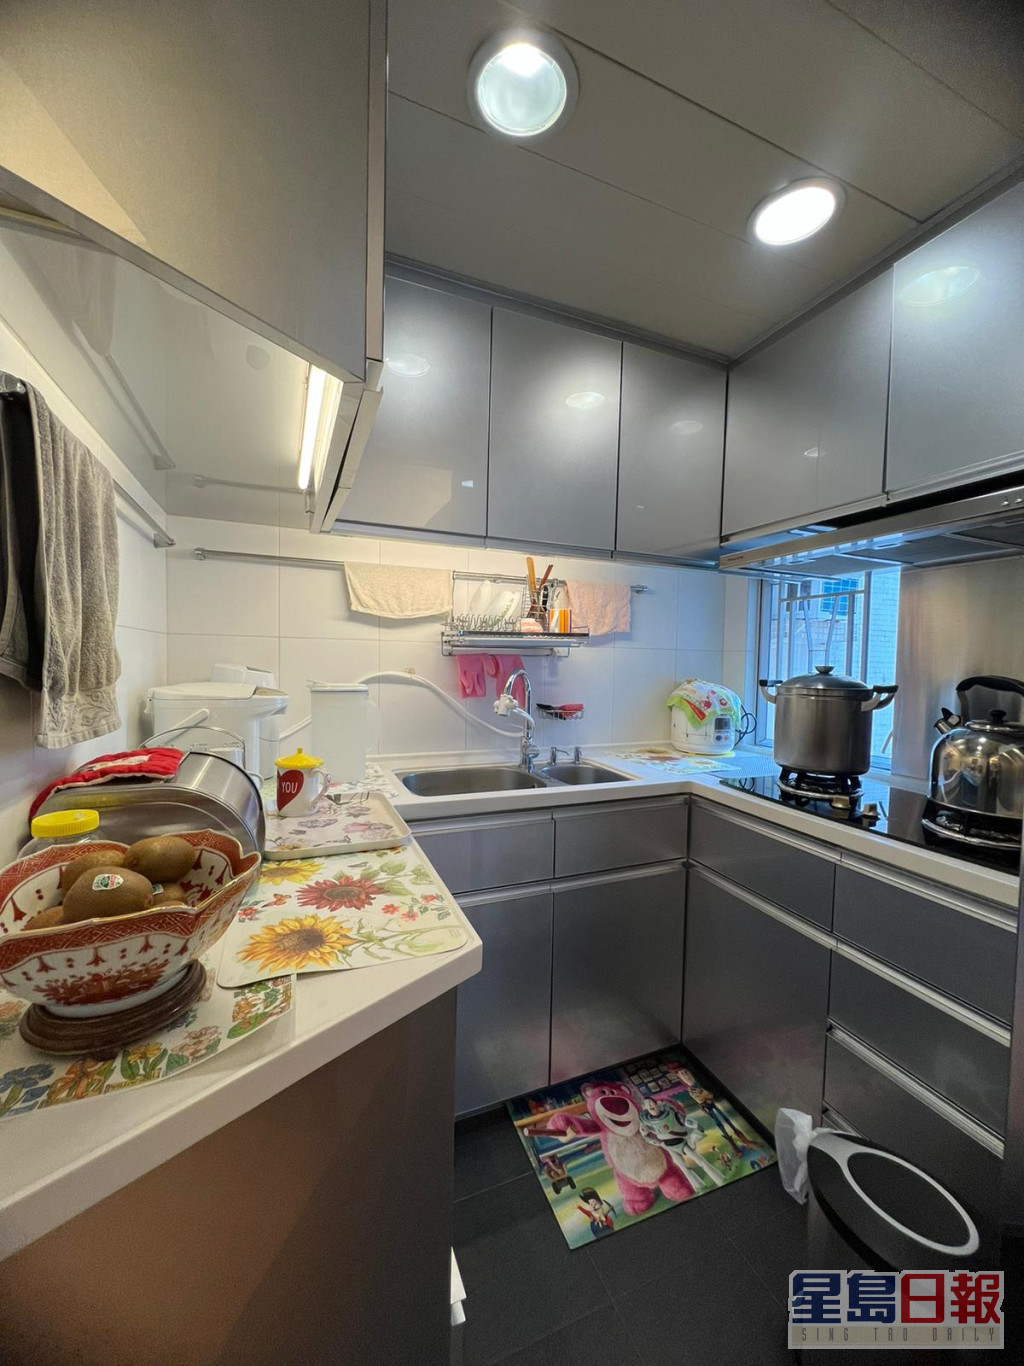 厨房的洗涤、备餐及烹调空间分布有置。